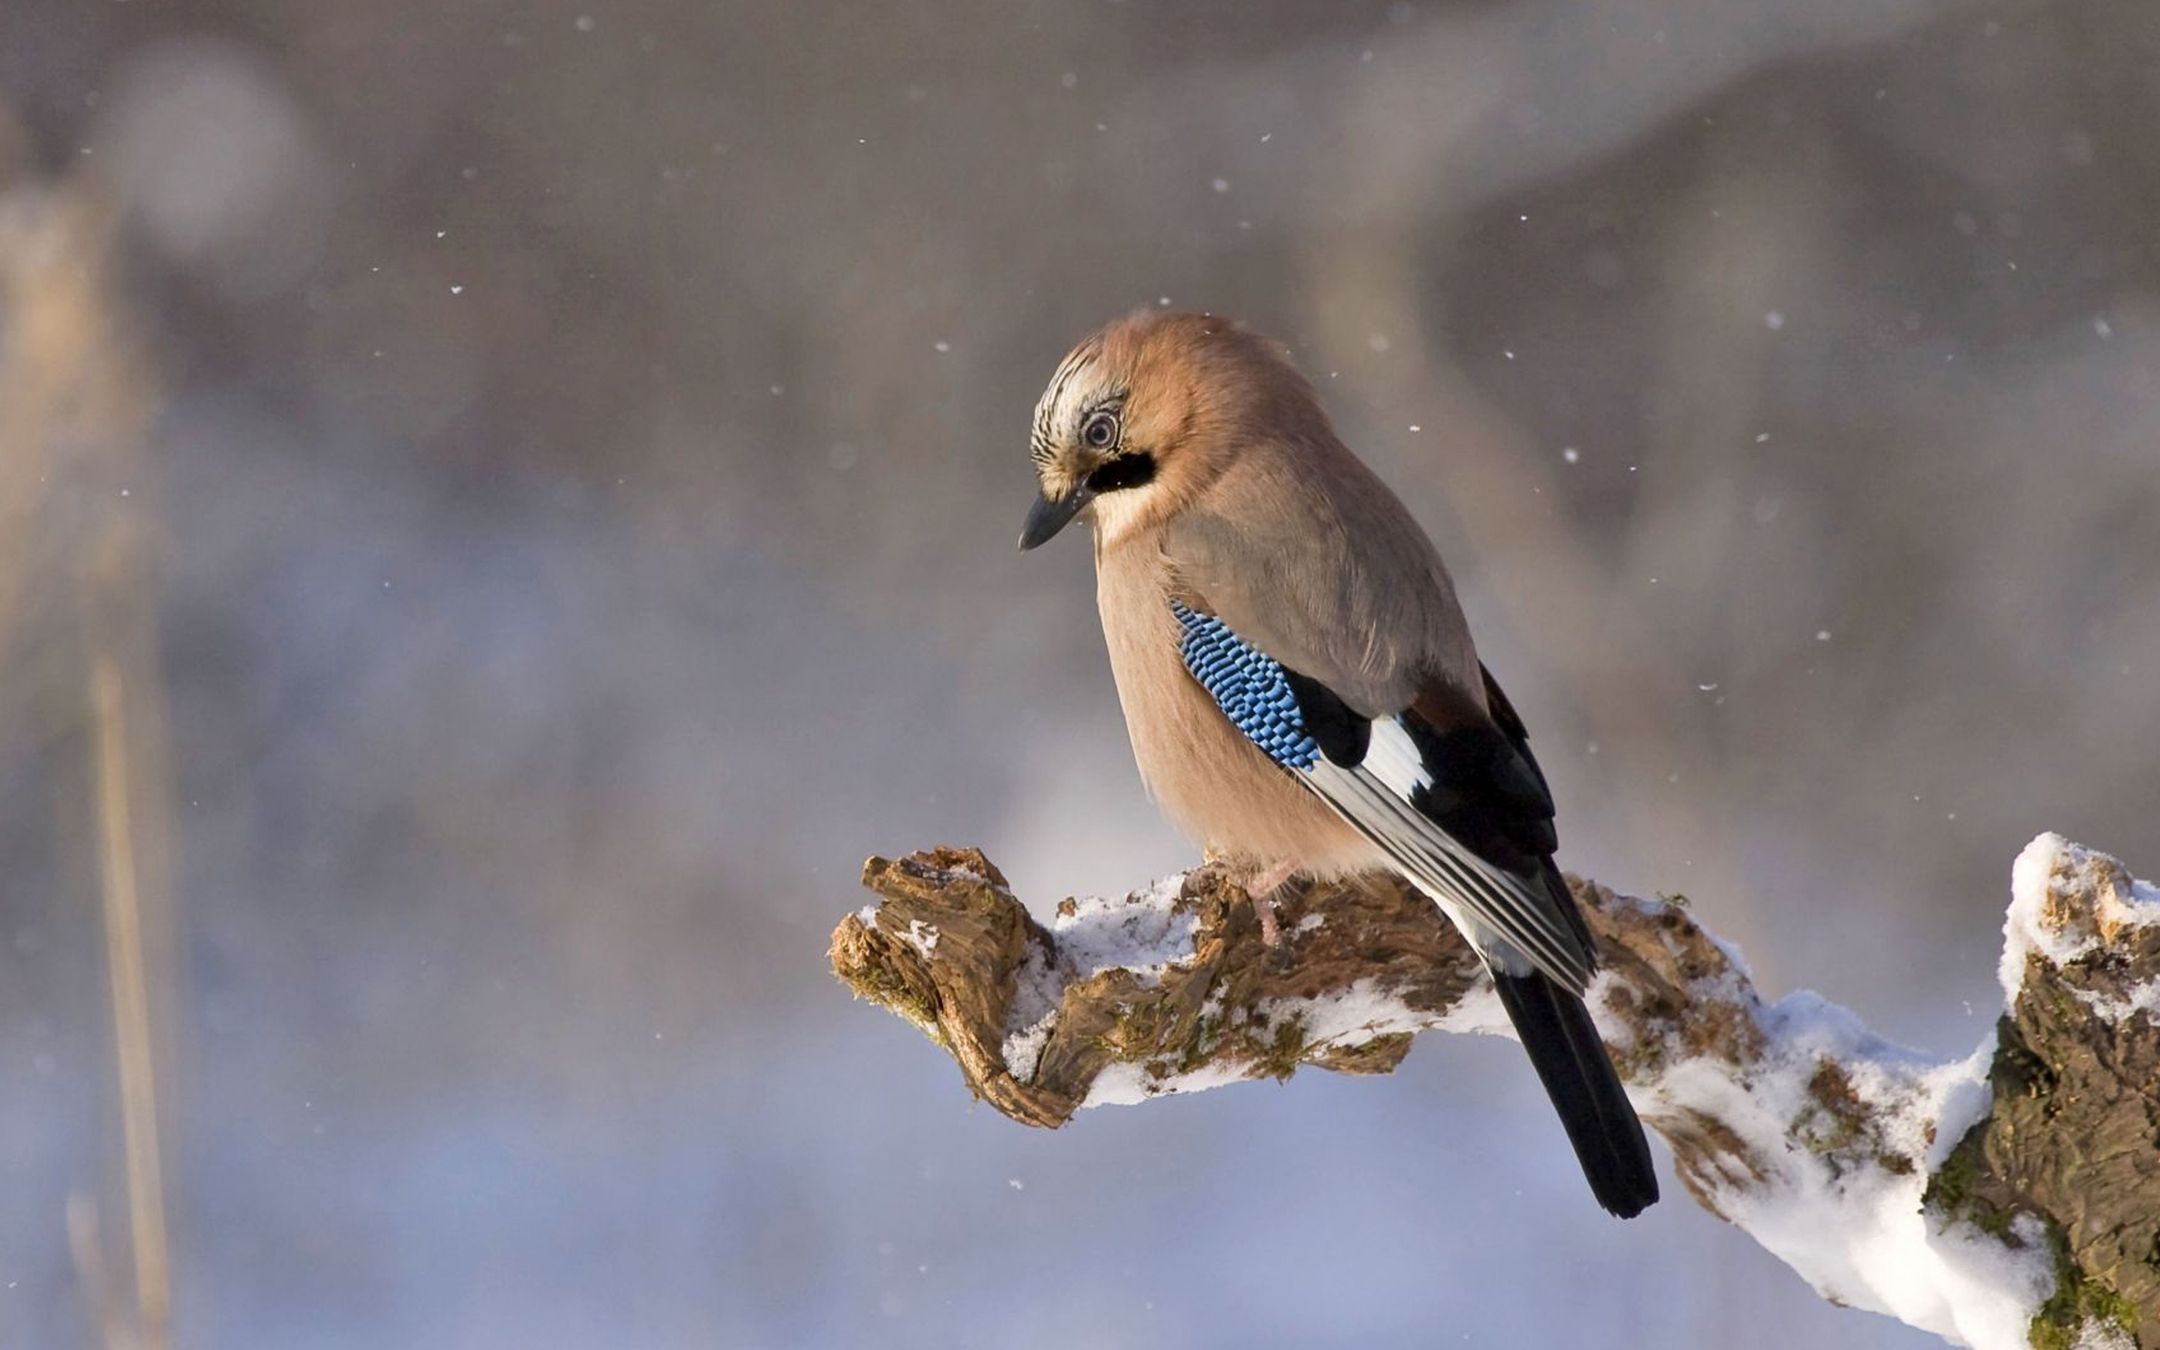 严冬白雪可爱的鸟儿们停留枝头小巧玲珑壁纸